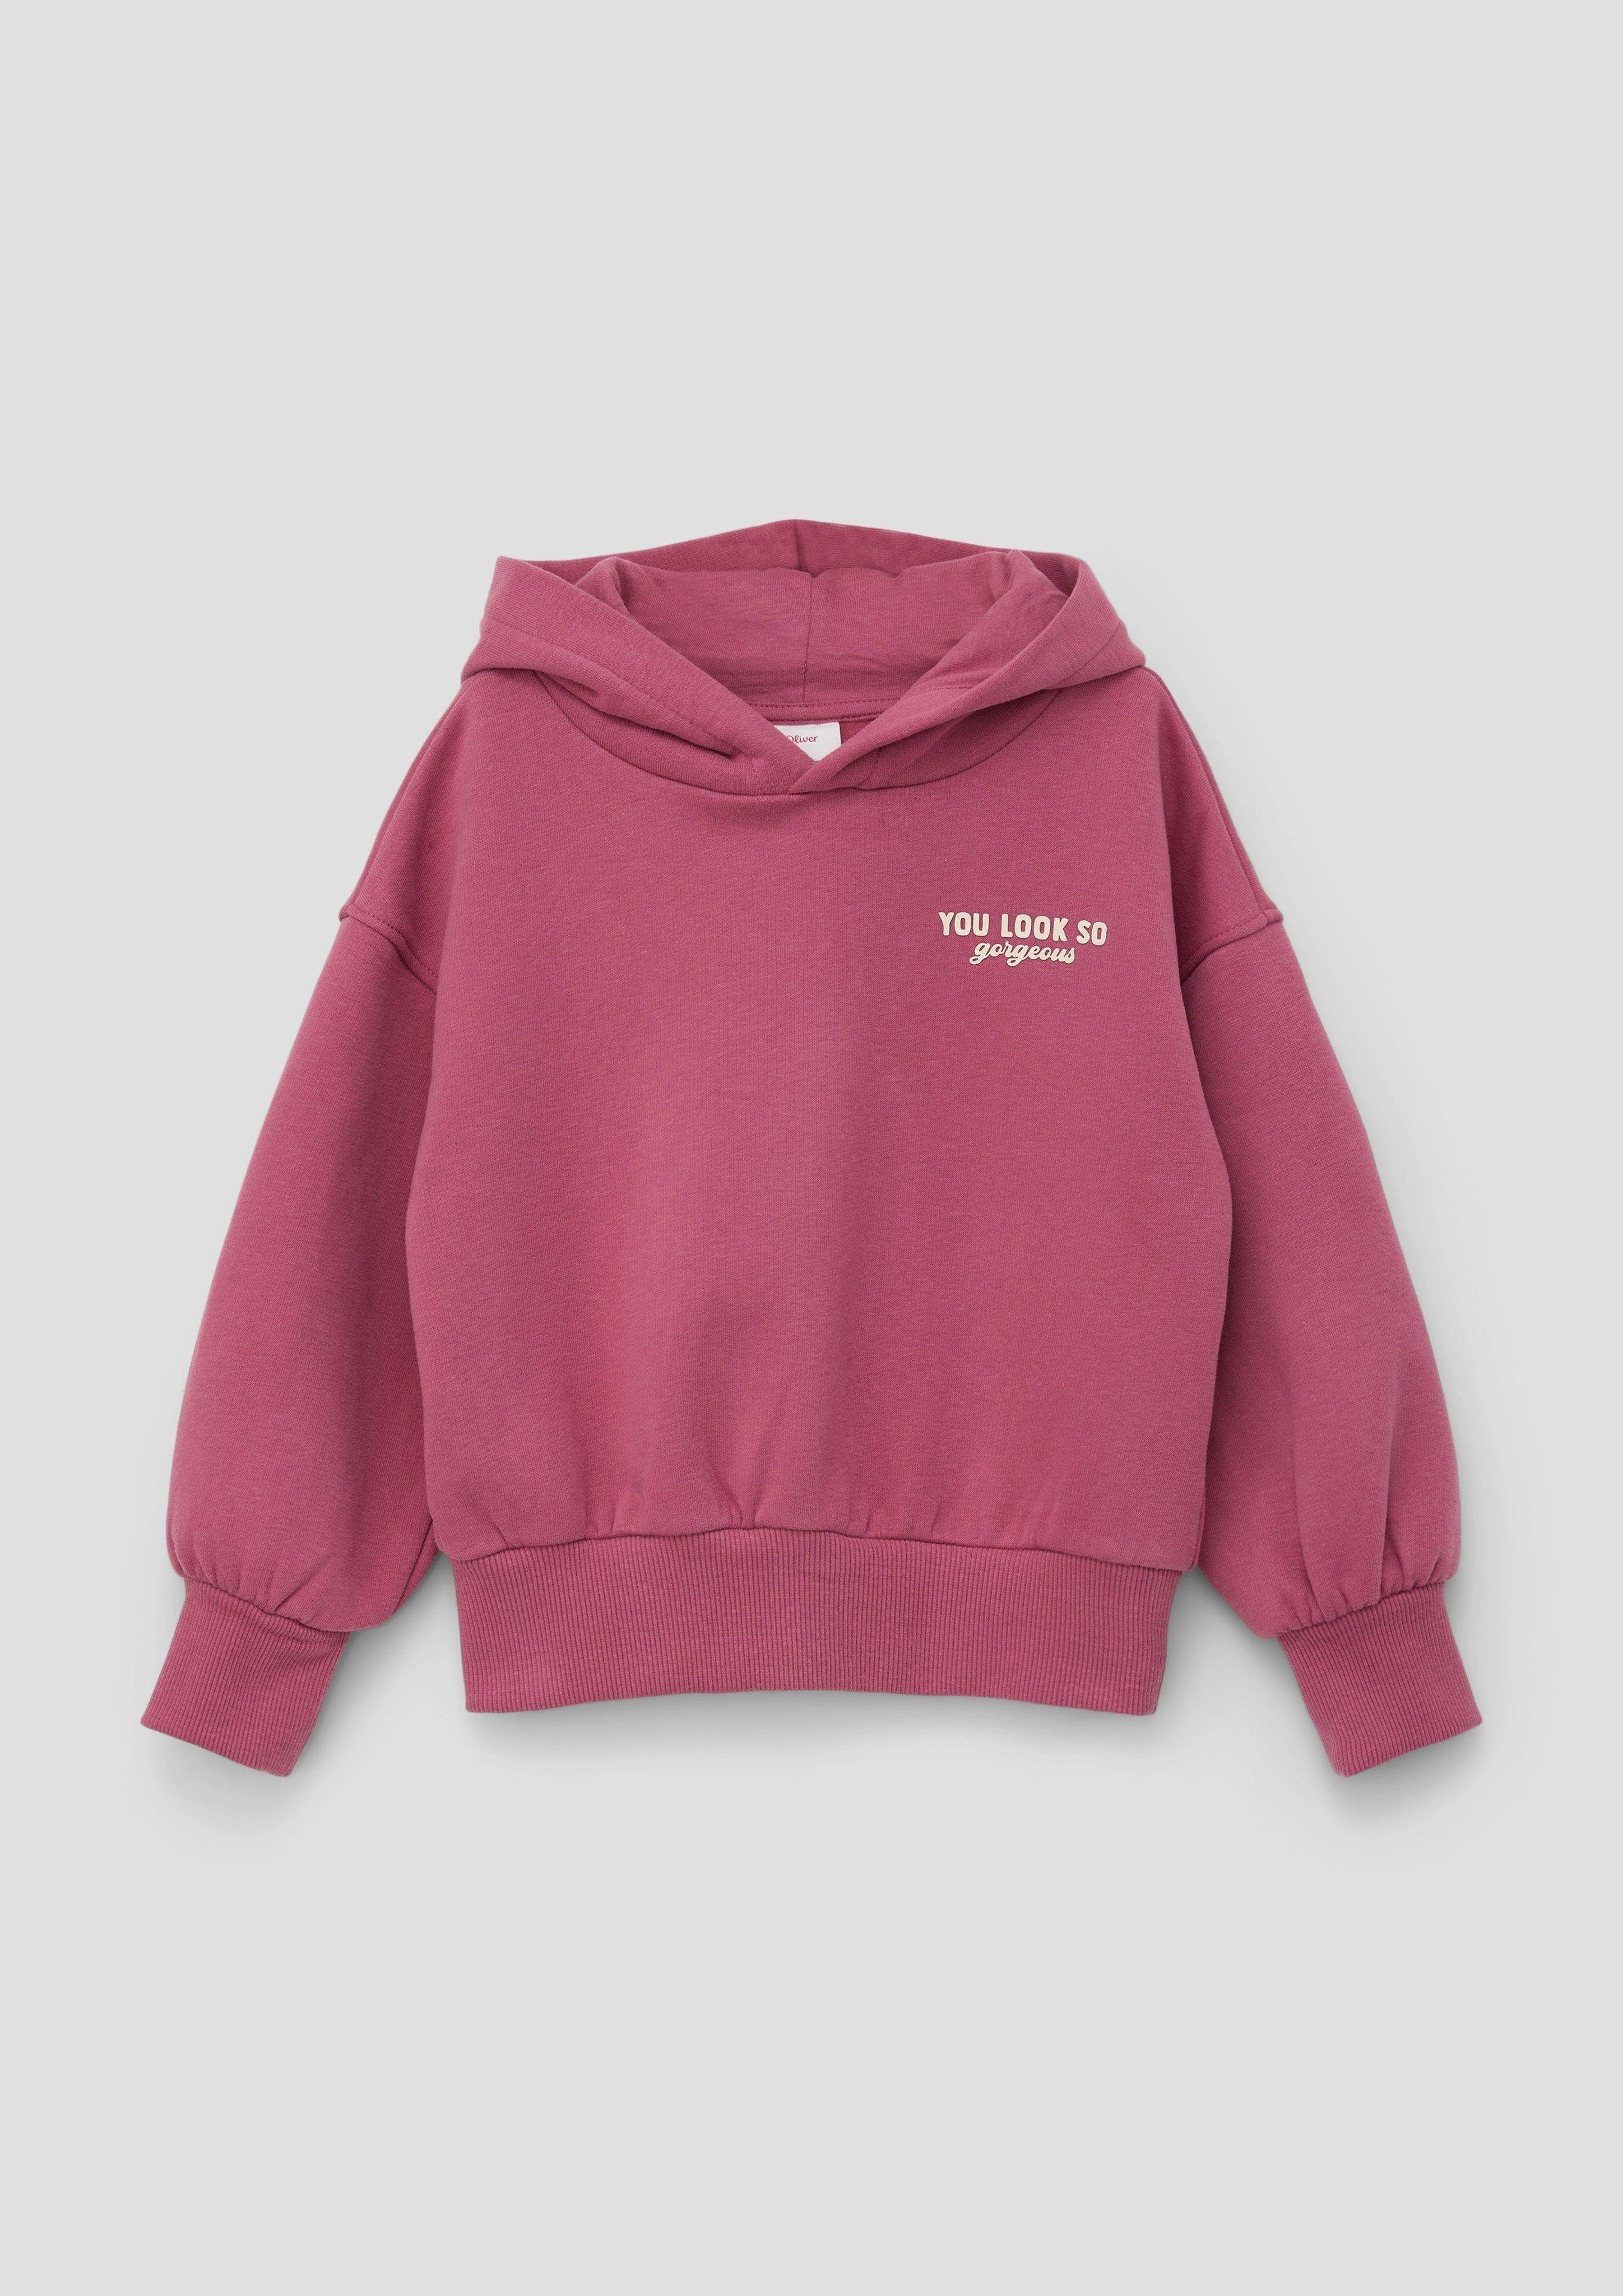 Innenseite Sweatshirt s.Oliver mit Kapuzensweater weicher pink